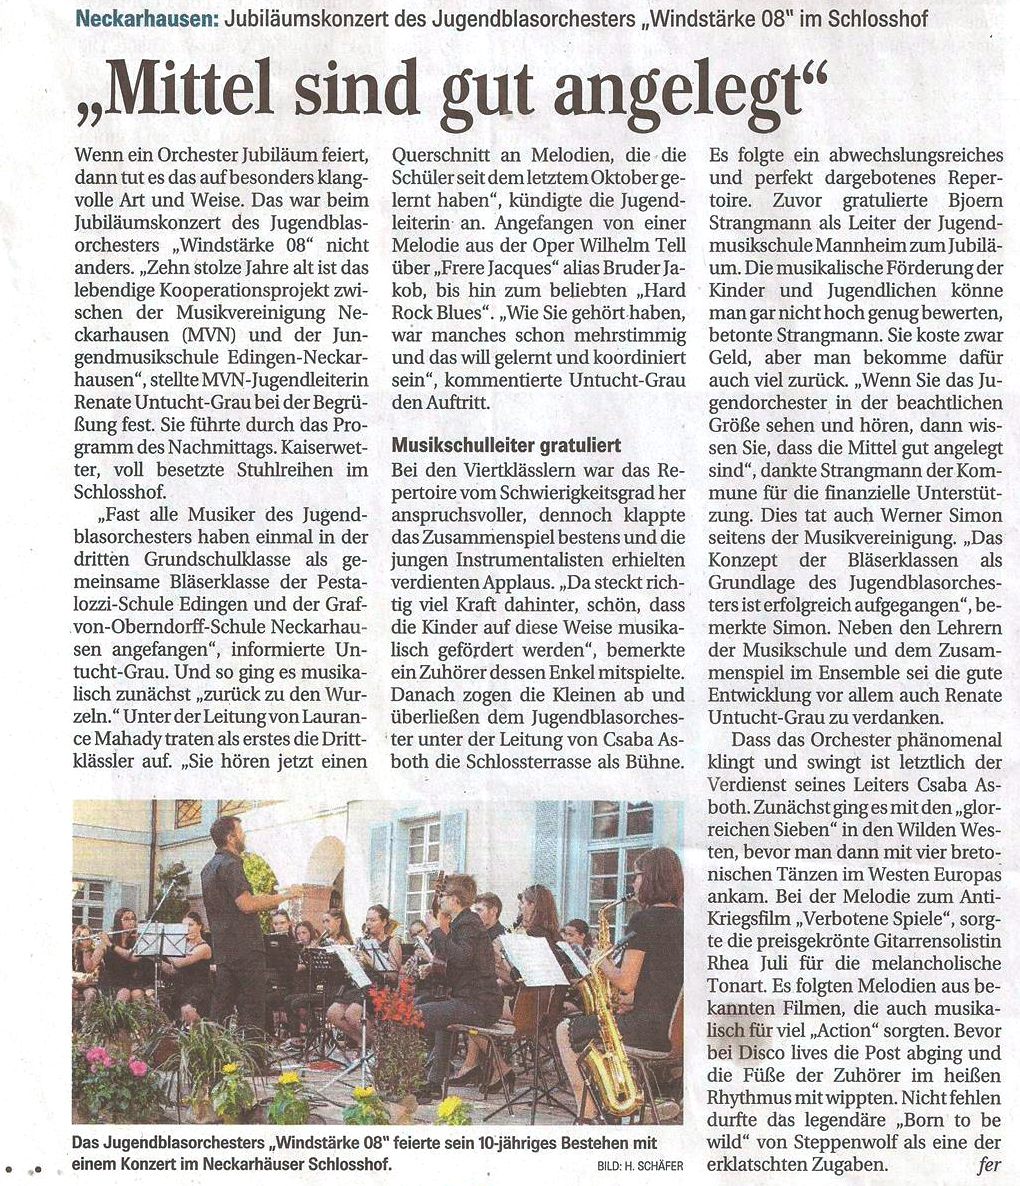 Pressebericht Mannheimer Morgen vom 11.7.18